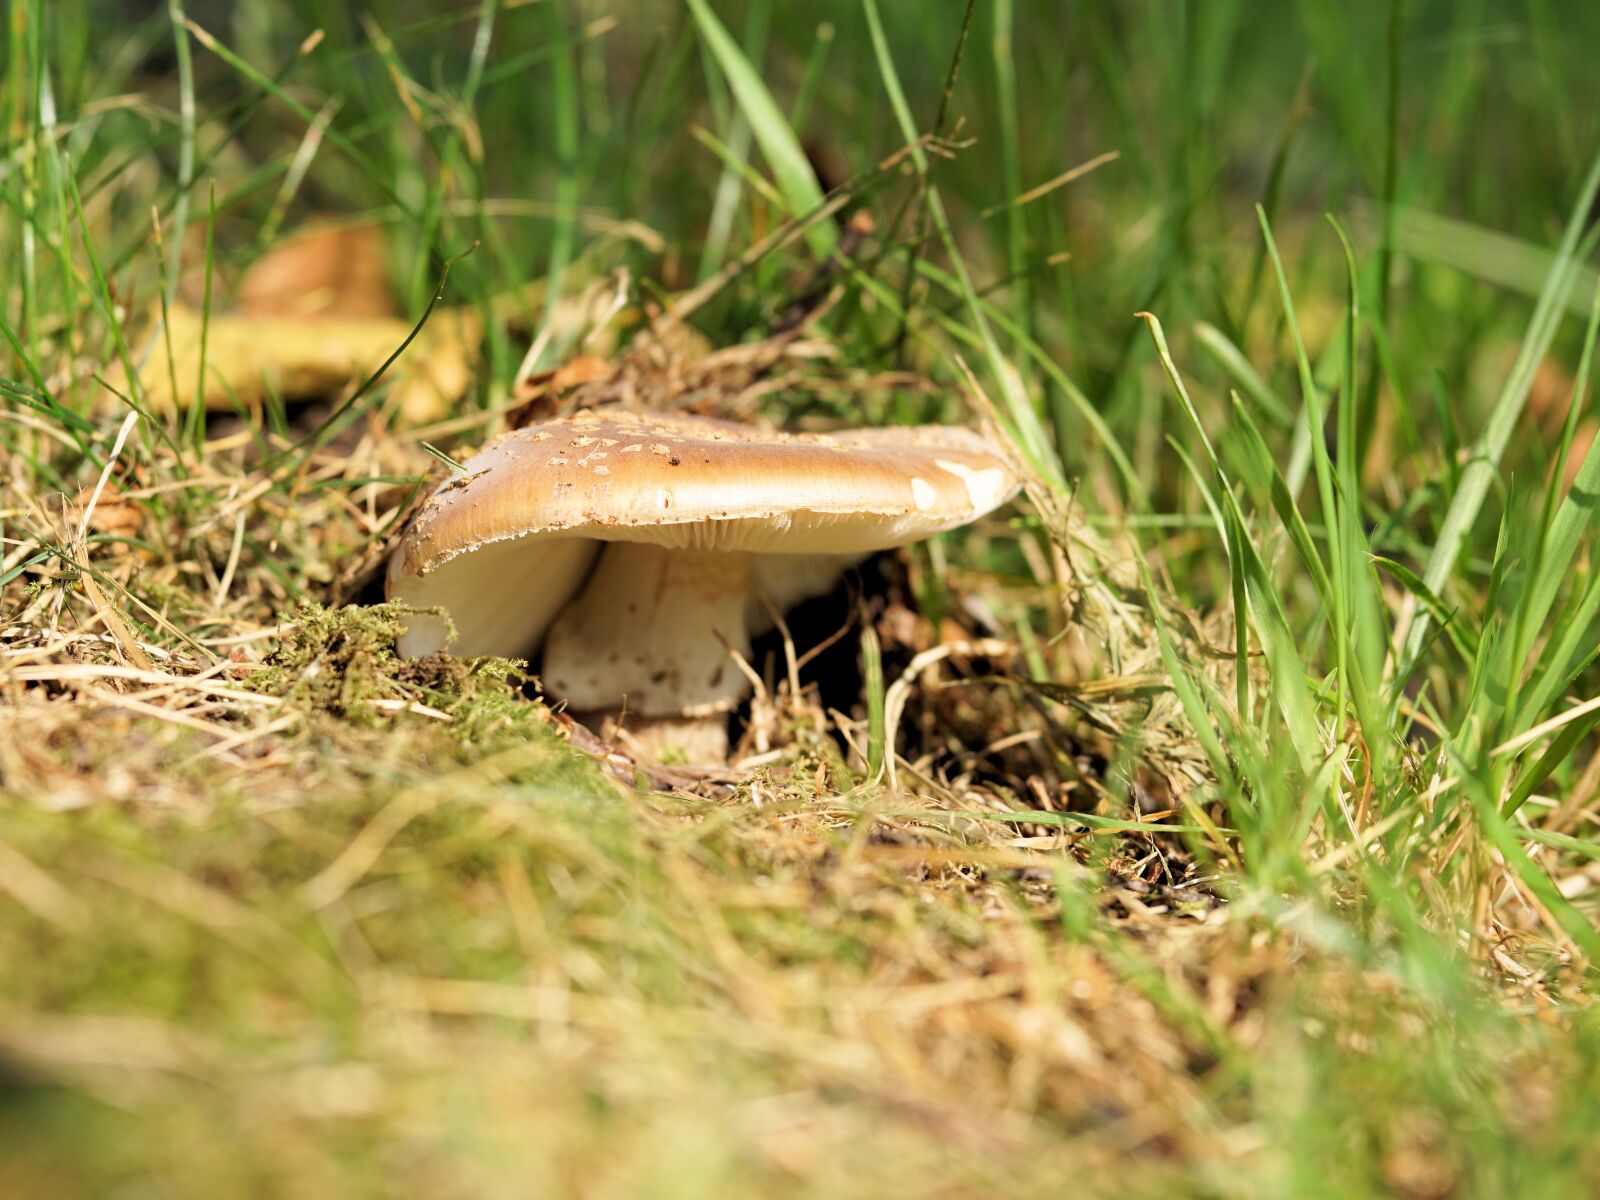 степные крымские грибы съедобные фото